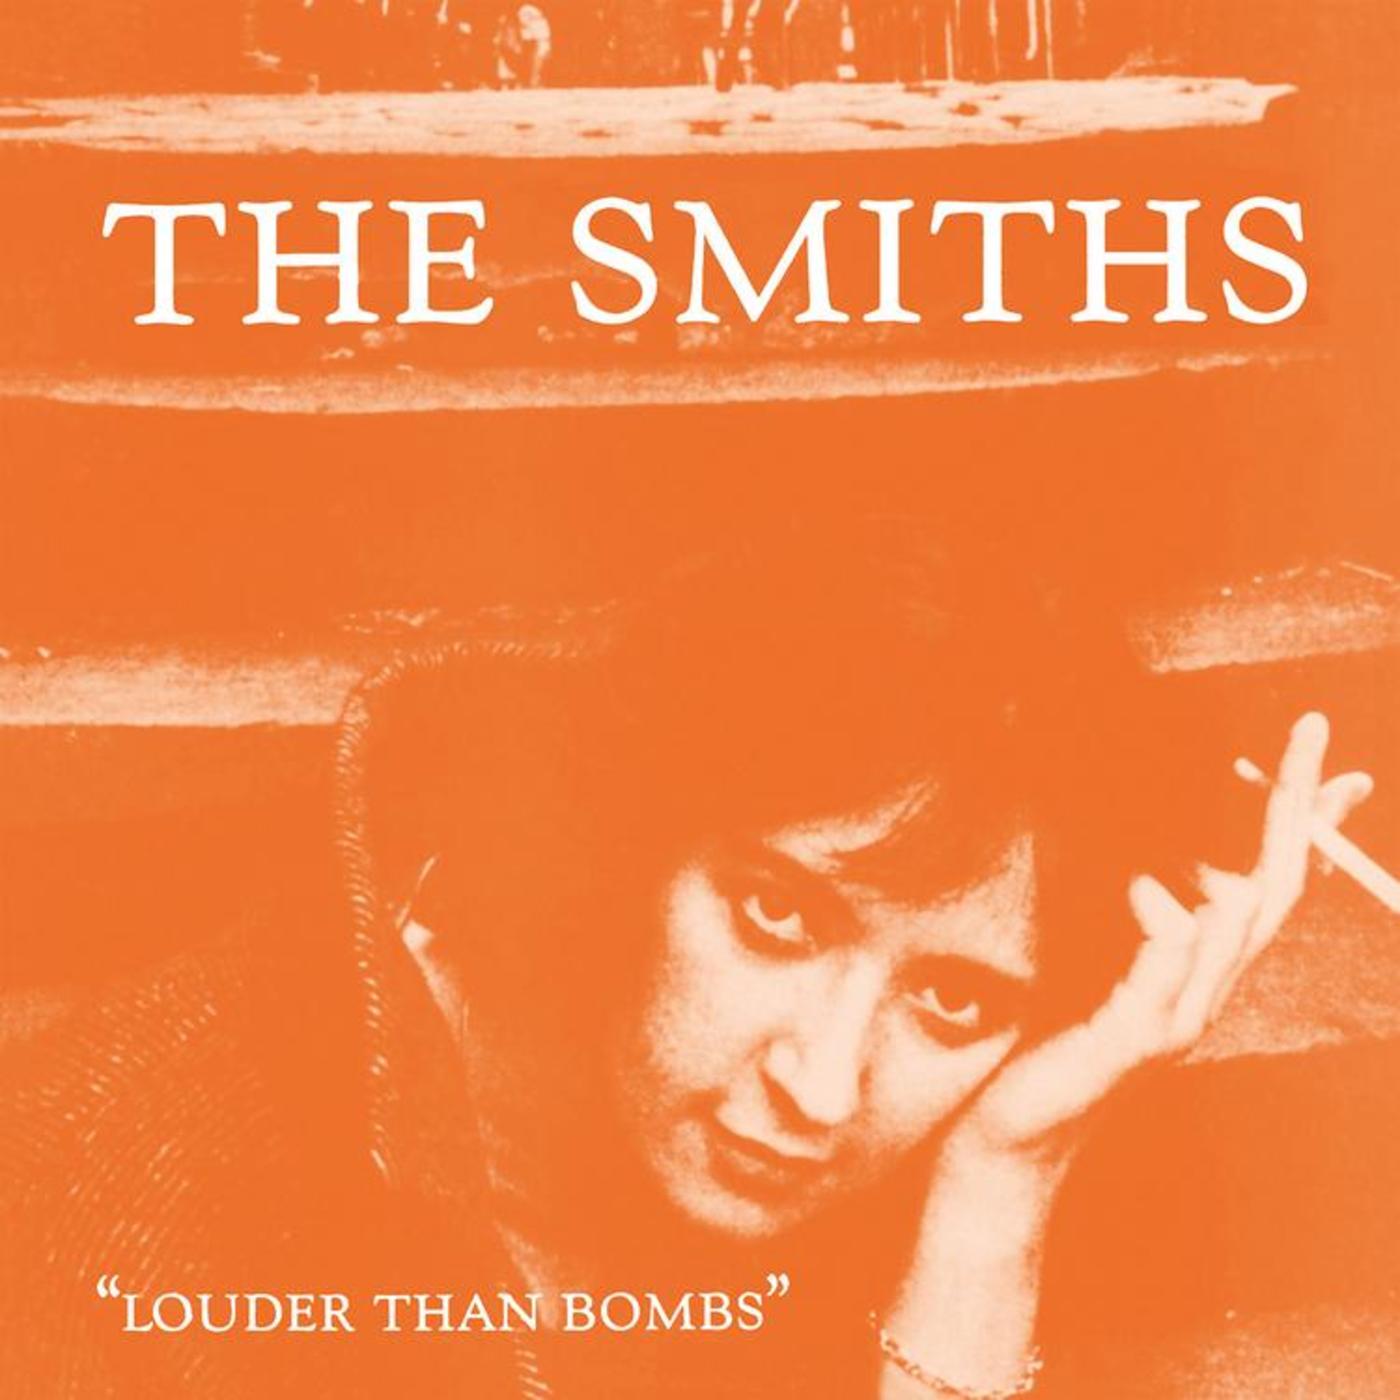 The Smiths | Rhino